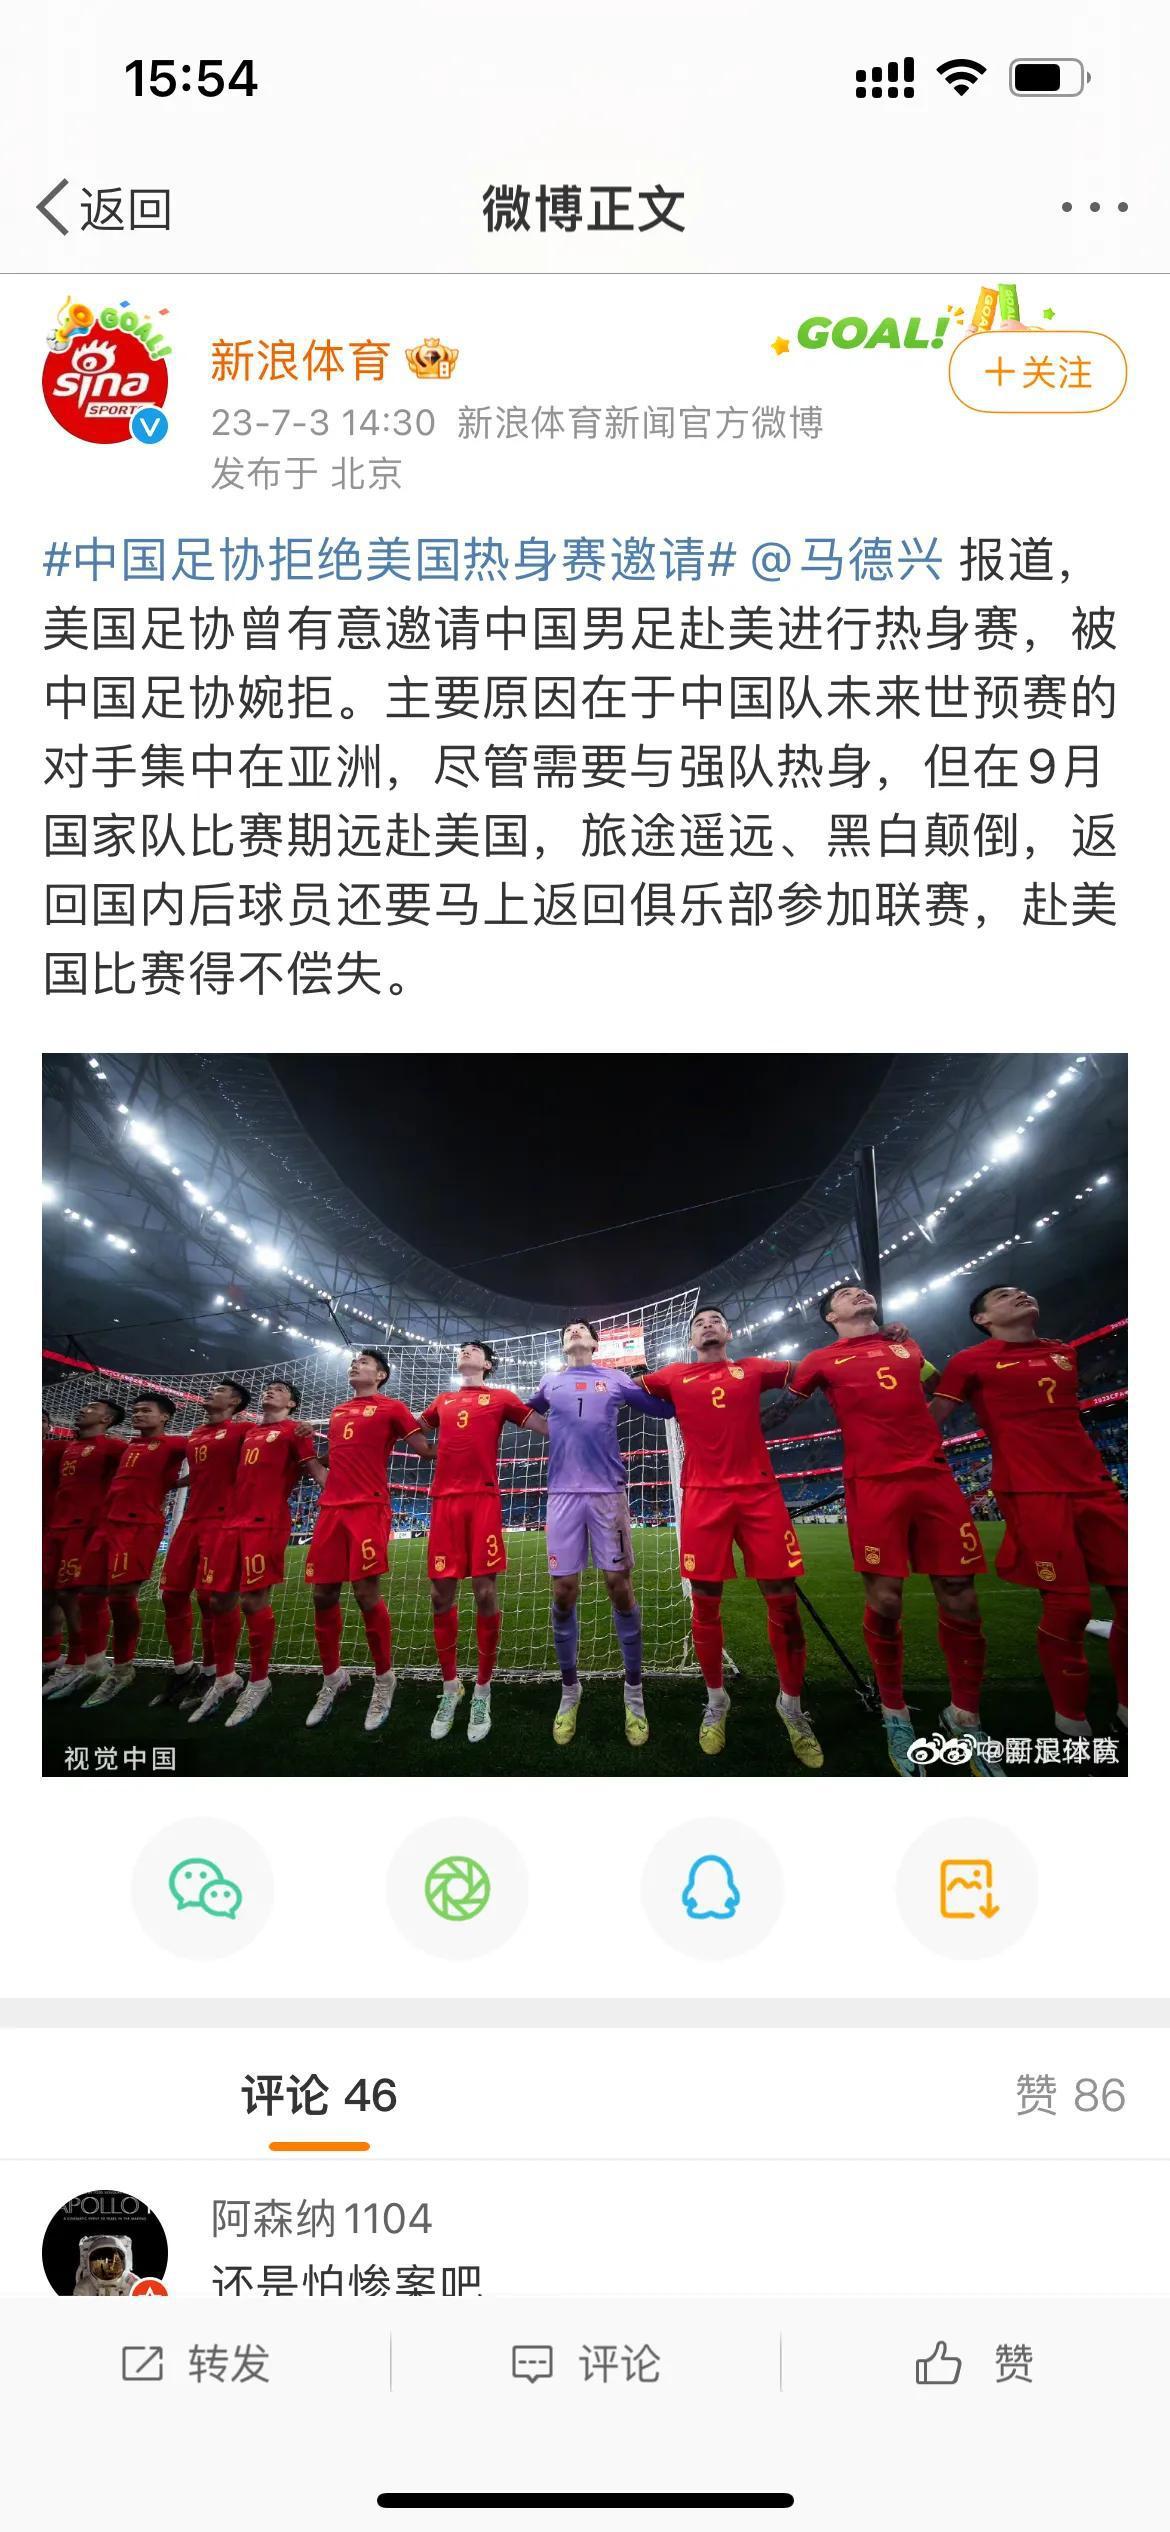 尴尬！中国足协硬气拒绝美国男足热身赛邀请，原因荒唐无语，球迷大实话一针见血。

(1)